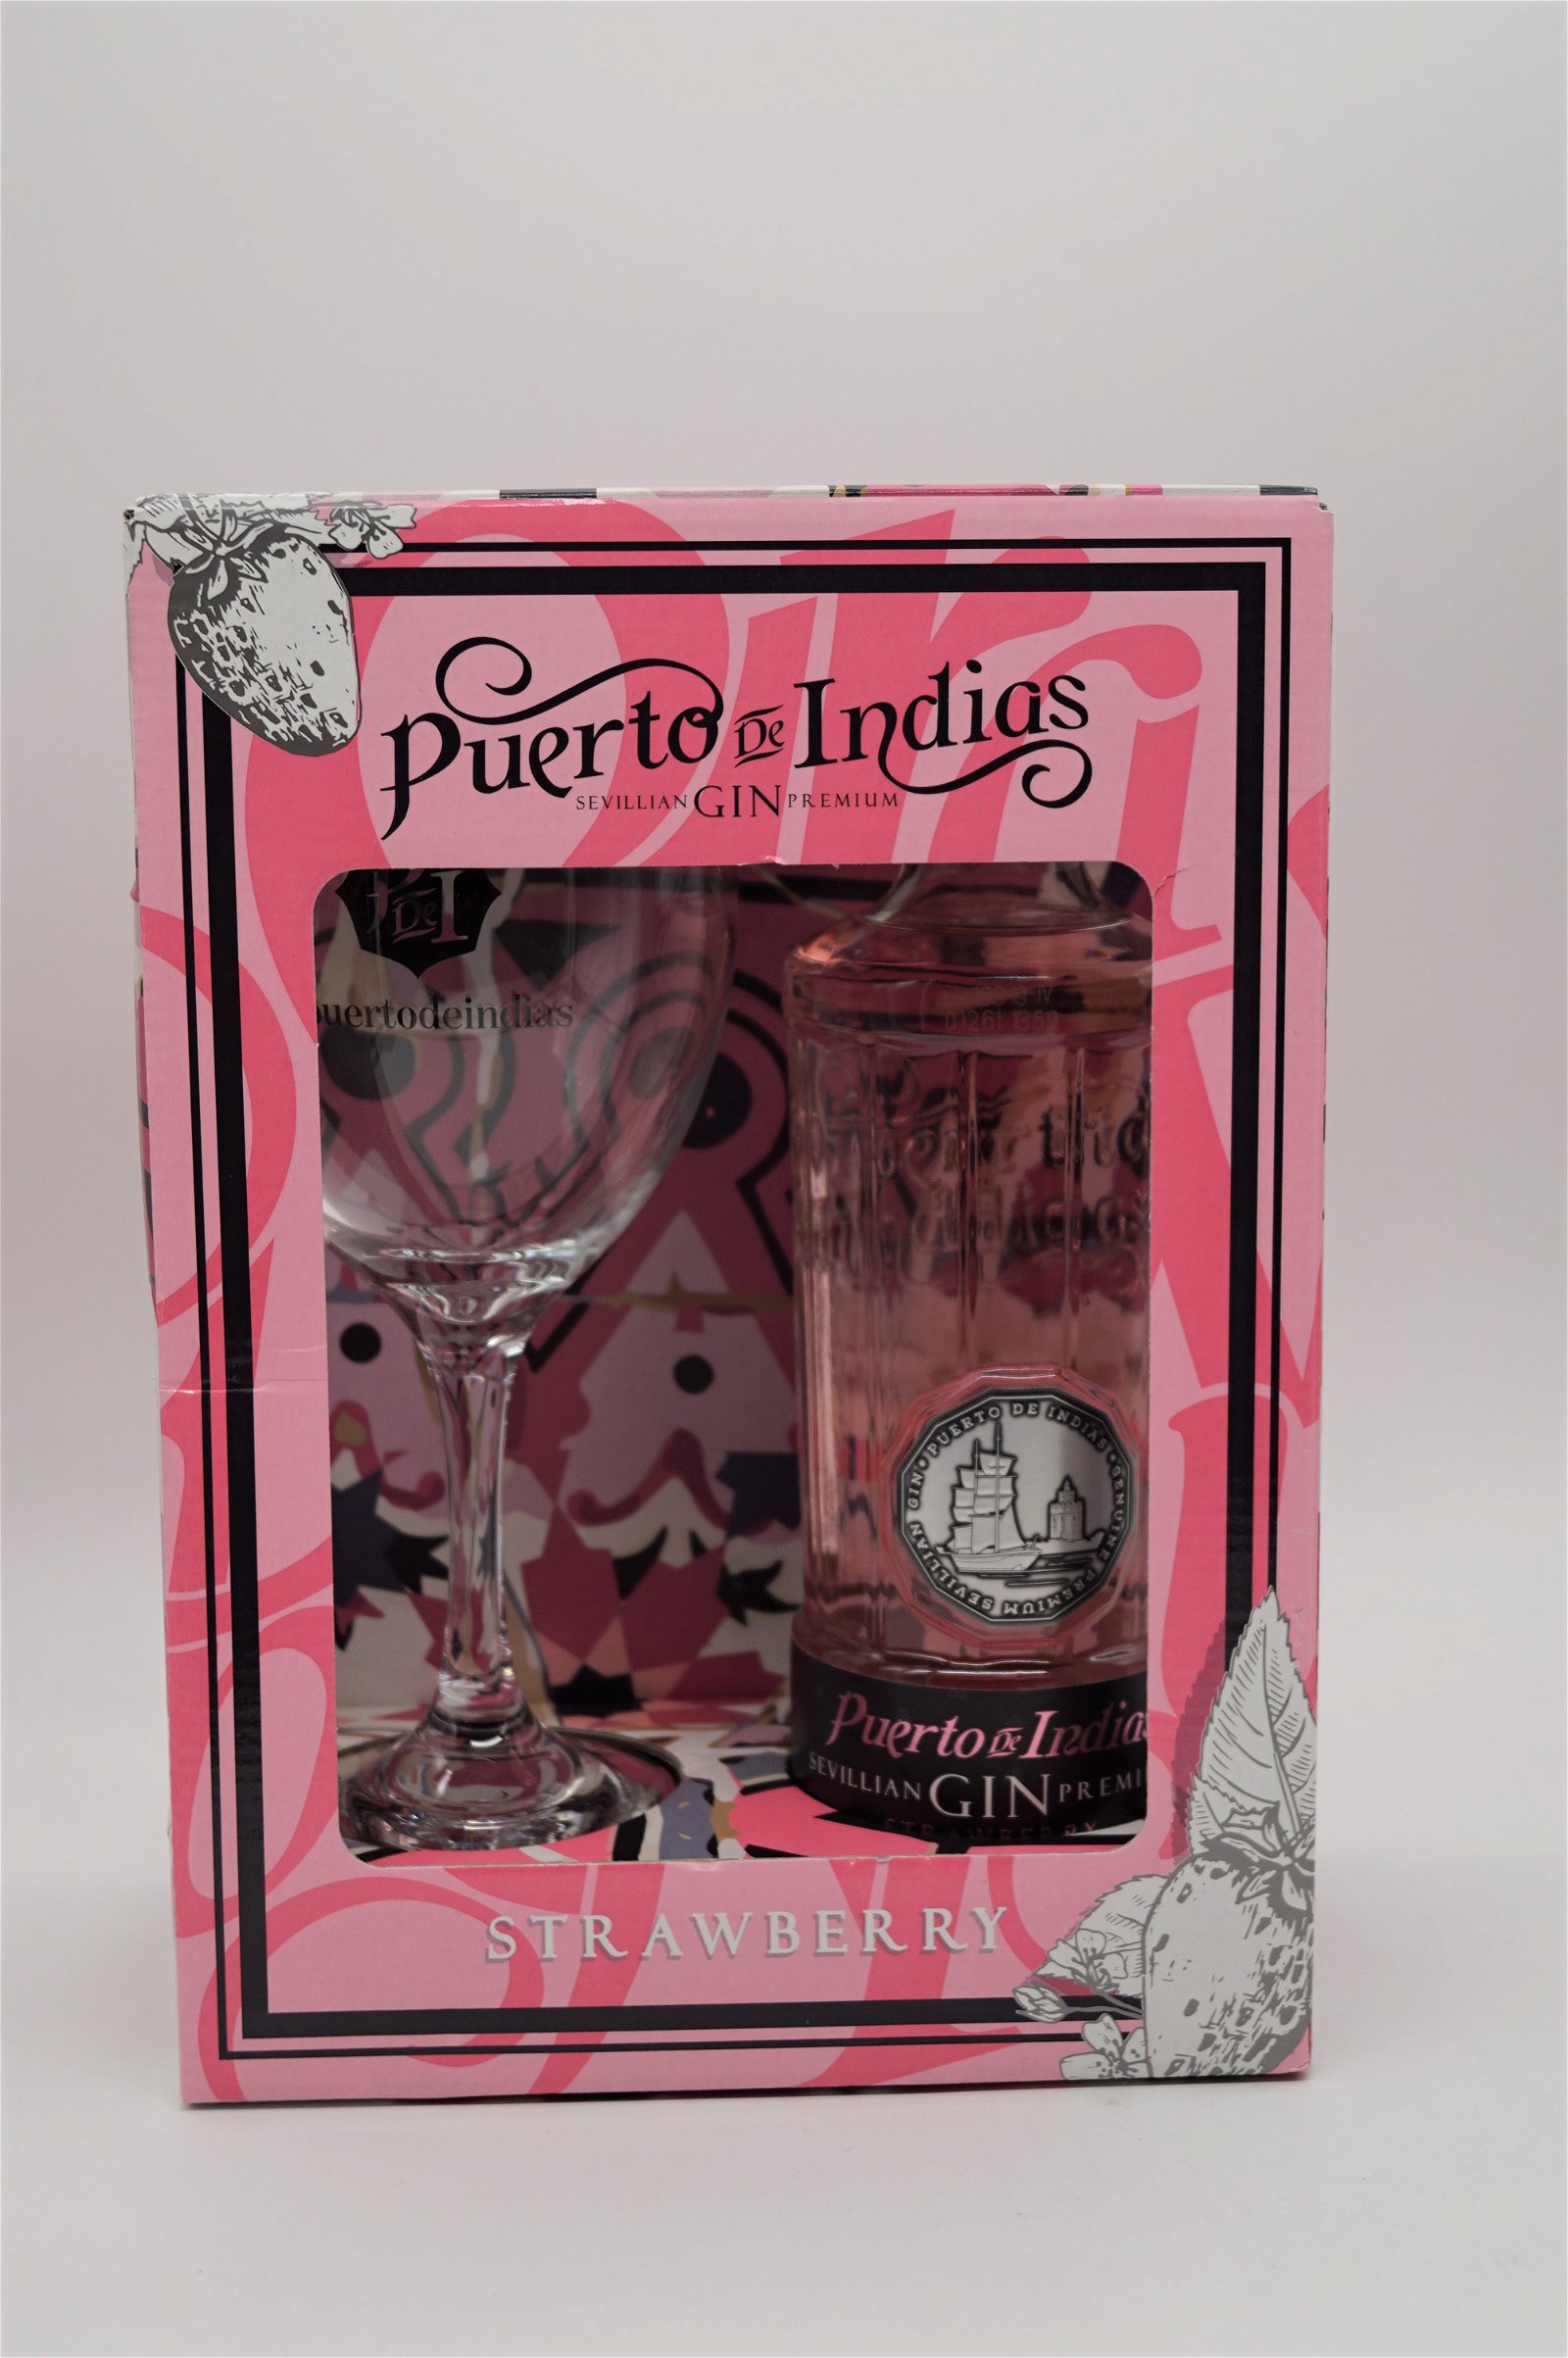 Puerto de Indias Sevillian Premium Gin Strawberry Geschenkverpackung